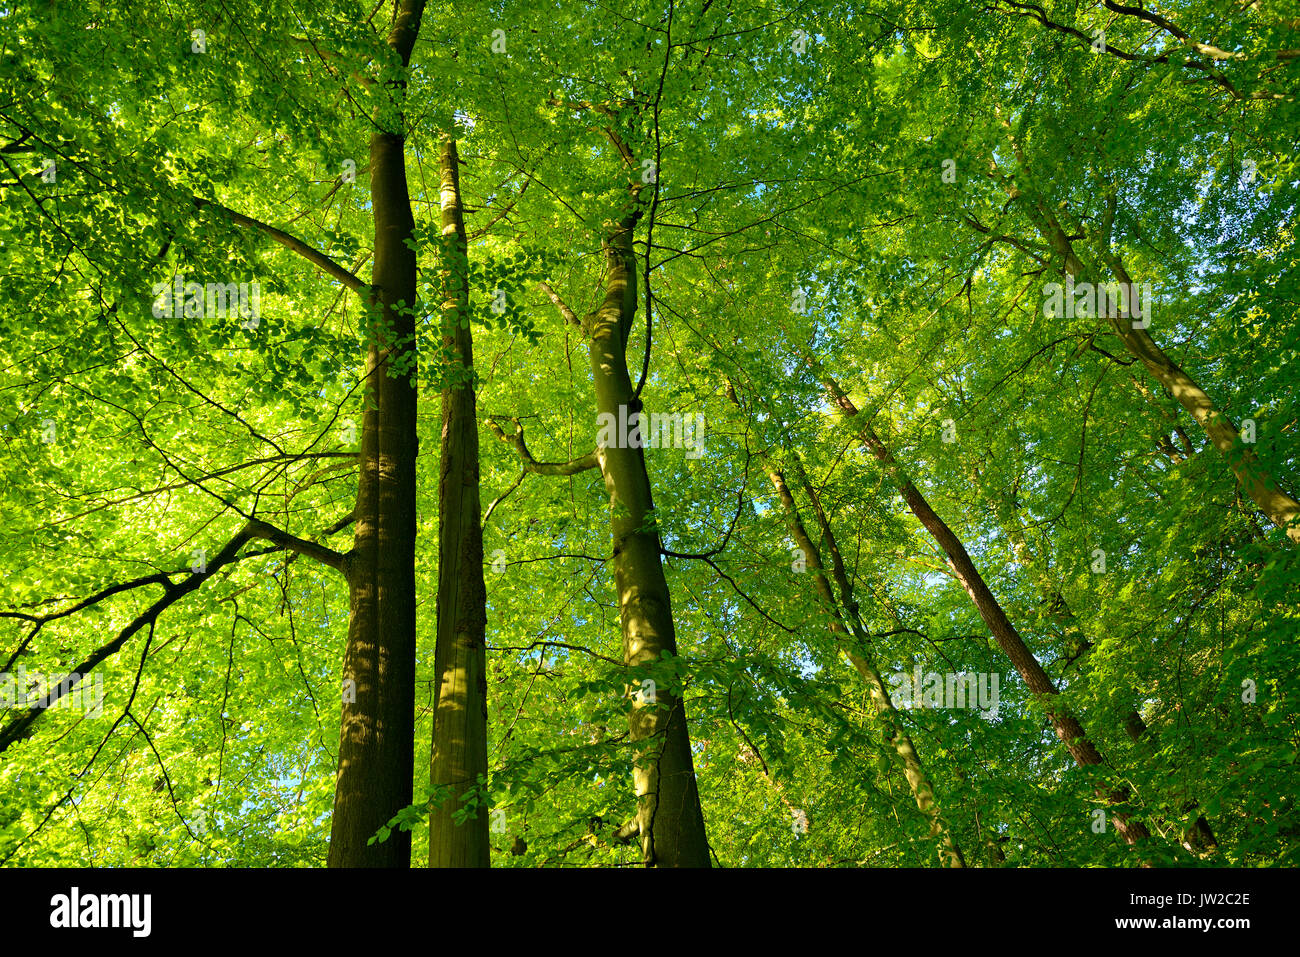 Incontaminata foresta di faggio, vista del tree tops, Zwiesel, Müritz National Park, sottoregione Serrahn, Patrimonio Naturale UNESCO, Foto Stock